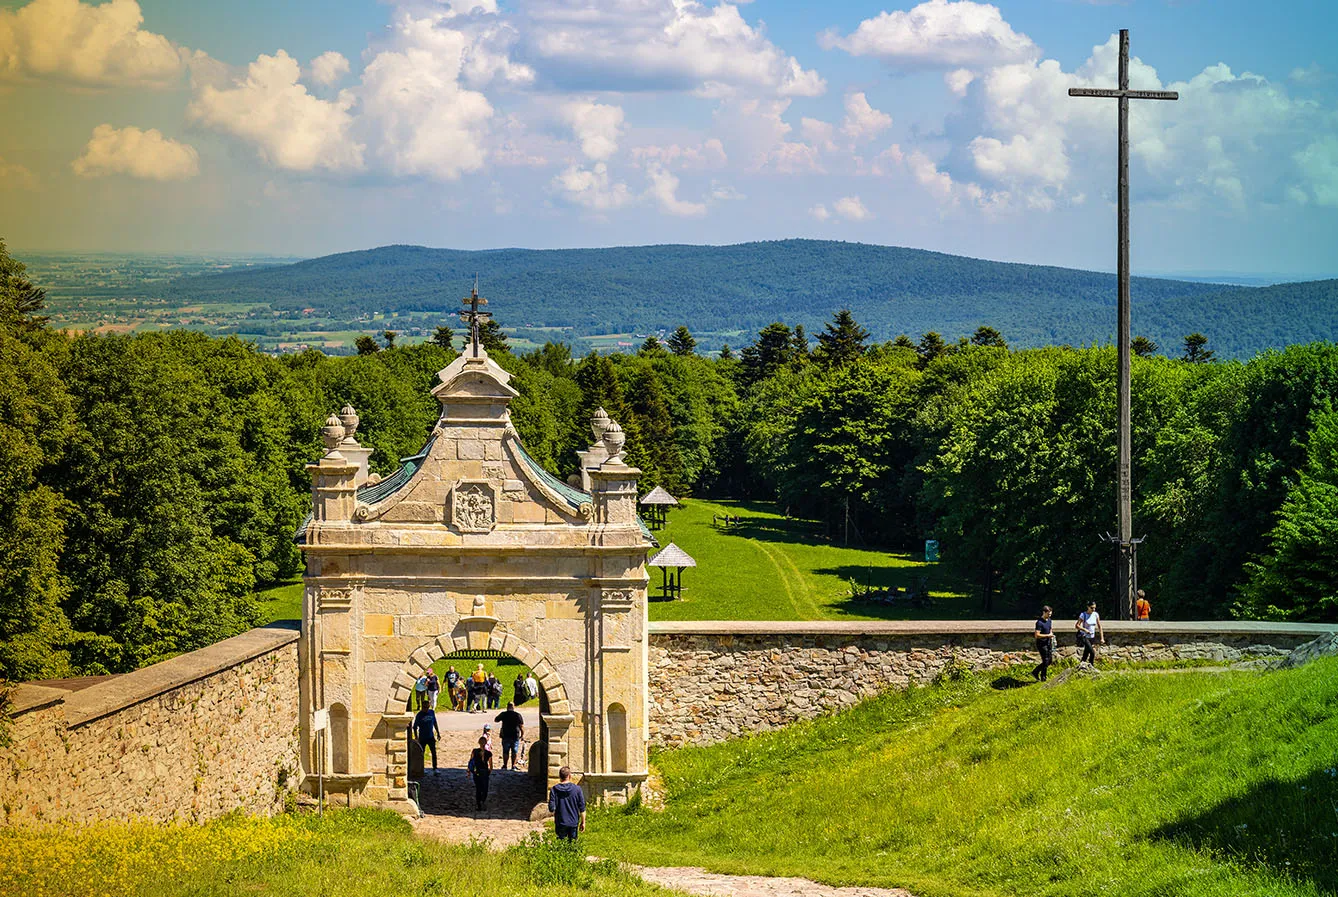 Lysa Gora, Swiety Krzyz mount hilltop with gate to medieval Benedictive Abbey and sanctuary in Swietokrzyskie Mountains near Nowa Slupia village in Poland.